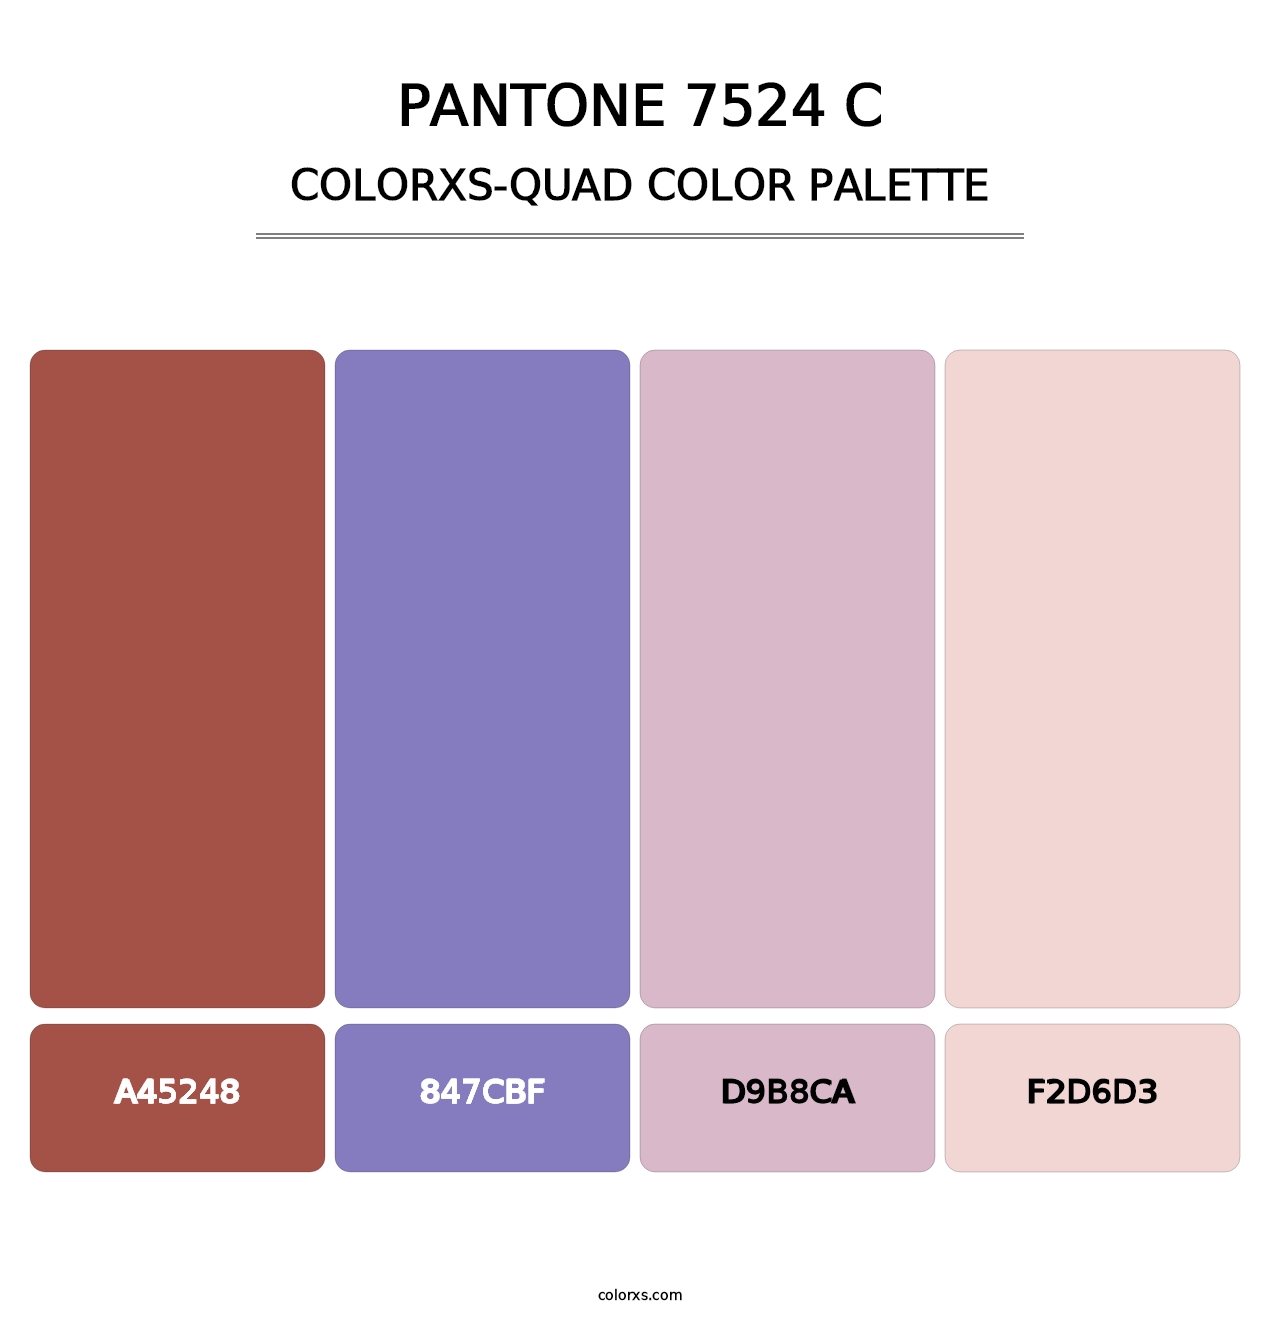 PANTONE 7524 C - Colorxs Quad Palette